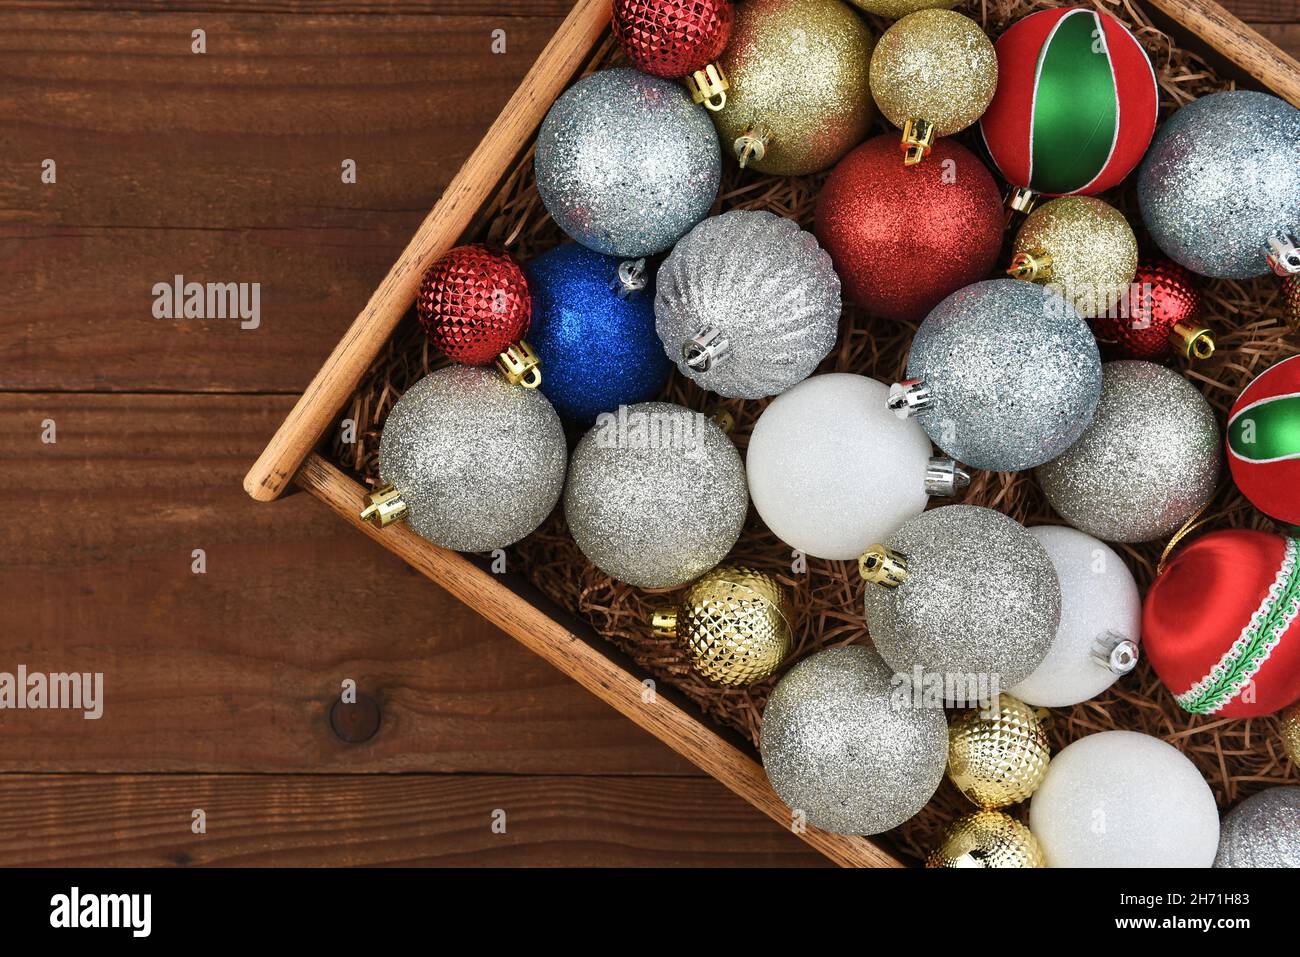 Piso de Navidad - Caja de madera de ornamentos de árbol de Navidad en una superficie rústica de madera oscura. Foto de stock